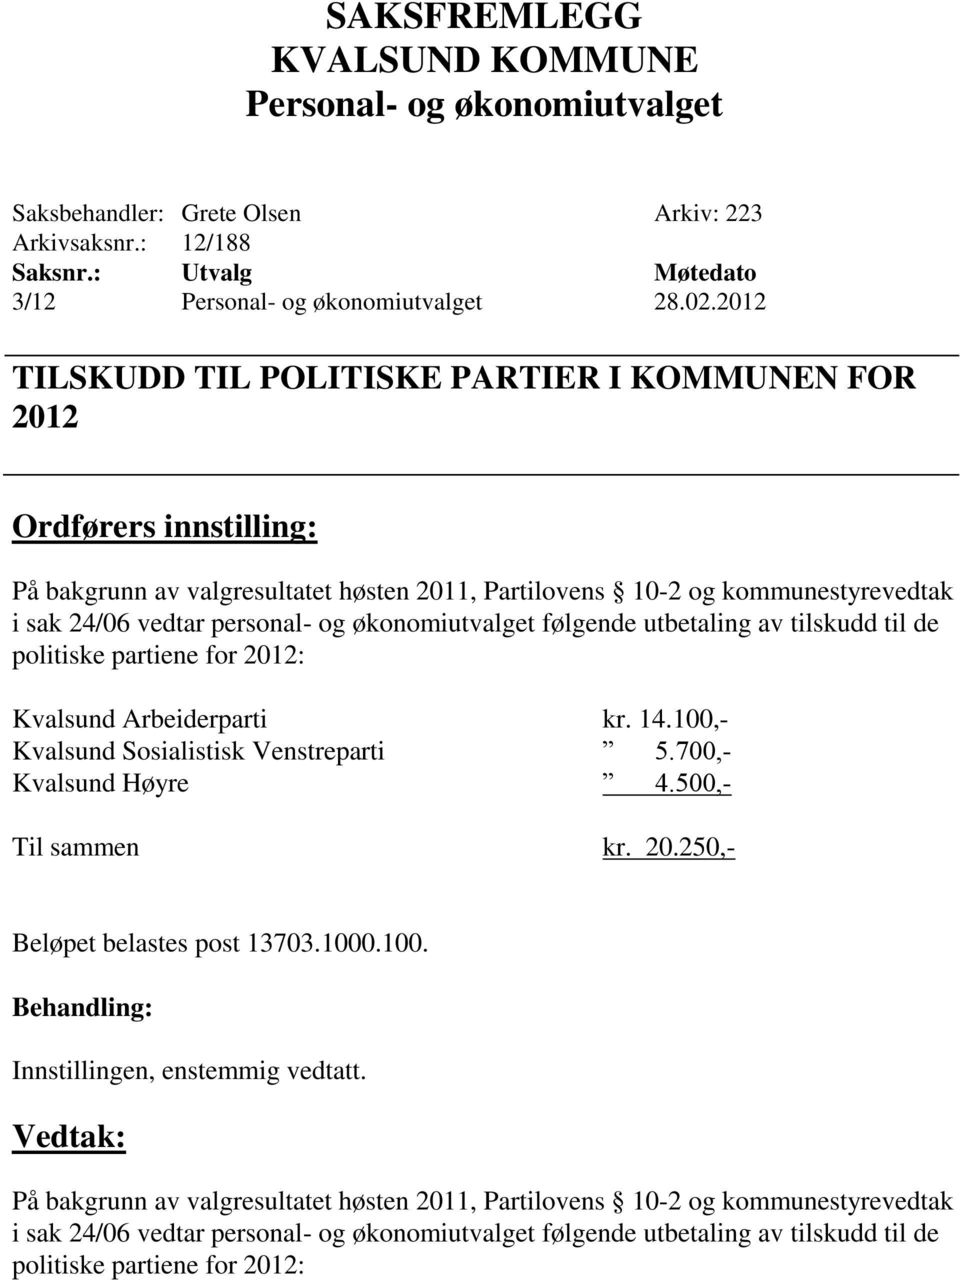 personal- og økonomiutvalget følgende utbetaling av tilskudd til de politiske partiene for 2012: Kvalsund Arbeiderparti kr. 14.100,- Kvalsund Sosialistisk Venstreparti 5.